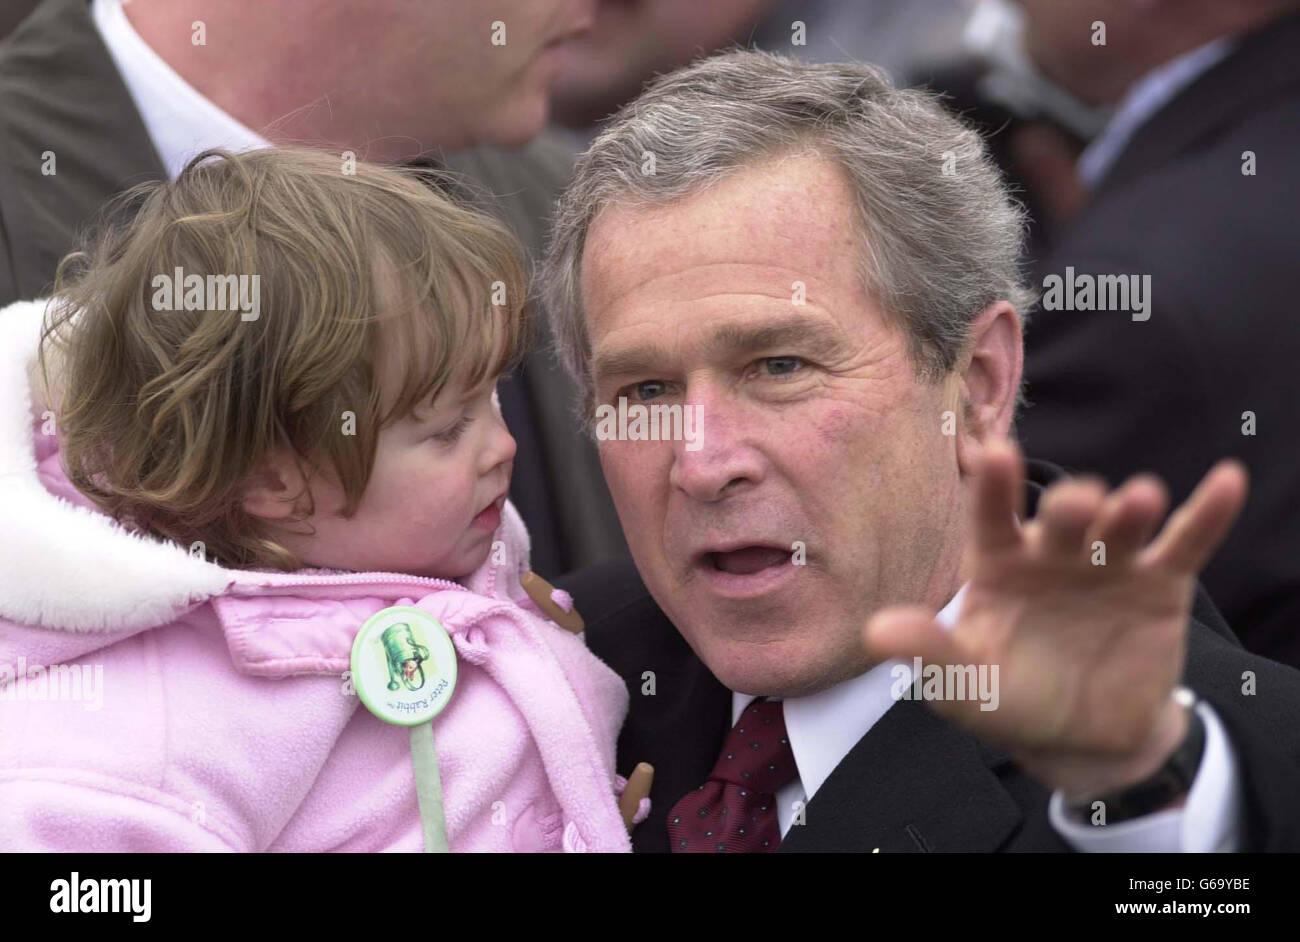 US-Präsident George W. Bush wird von der 19 Monate alten Seria Whickens begrüßt, als er bei der RAF Aldergrove in Nordirland ankommt. * die IRA stand erneut unter Druck, ihre Gewaltkampagne zu beenden, als US-Präsident George W. Bush in Nordirland eintraf, um Politiker und Paramilitärs zu drängen, die Extrameile für den Frieden zu gehen. Stockfoto